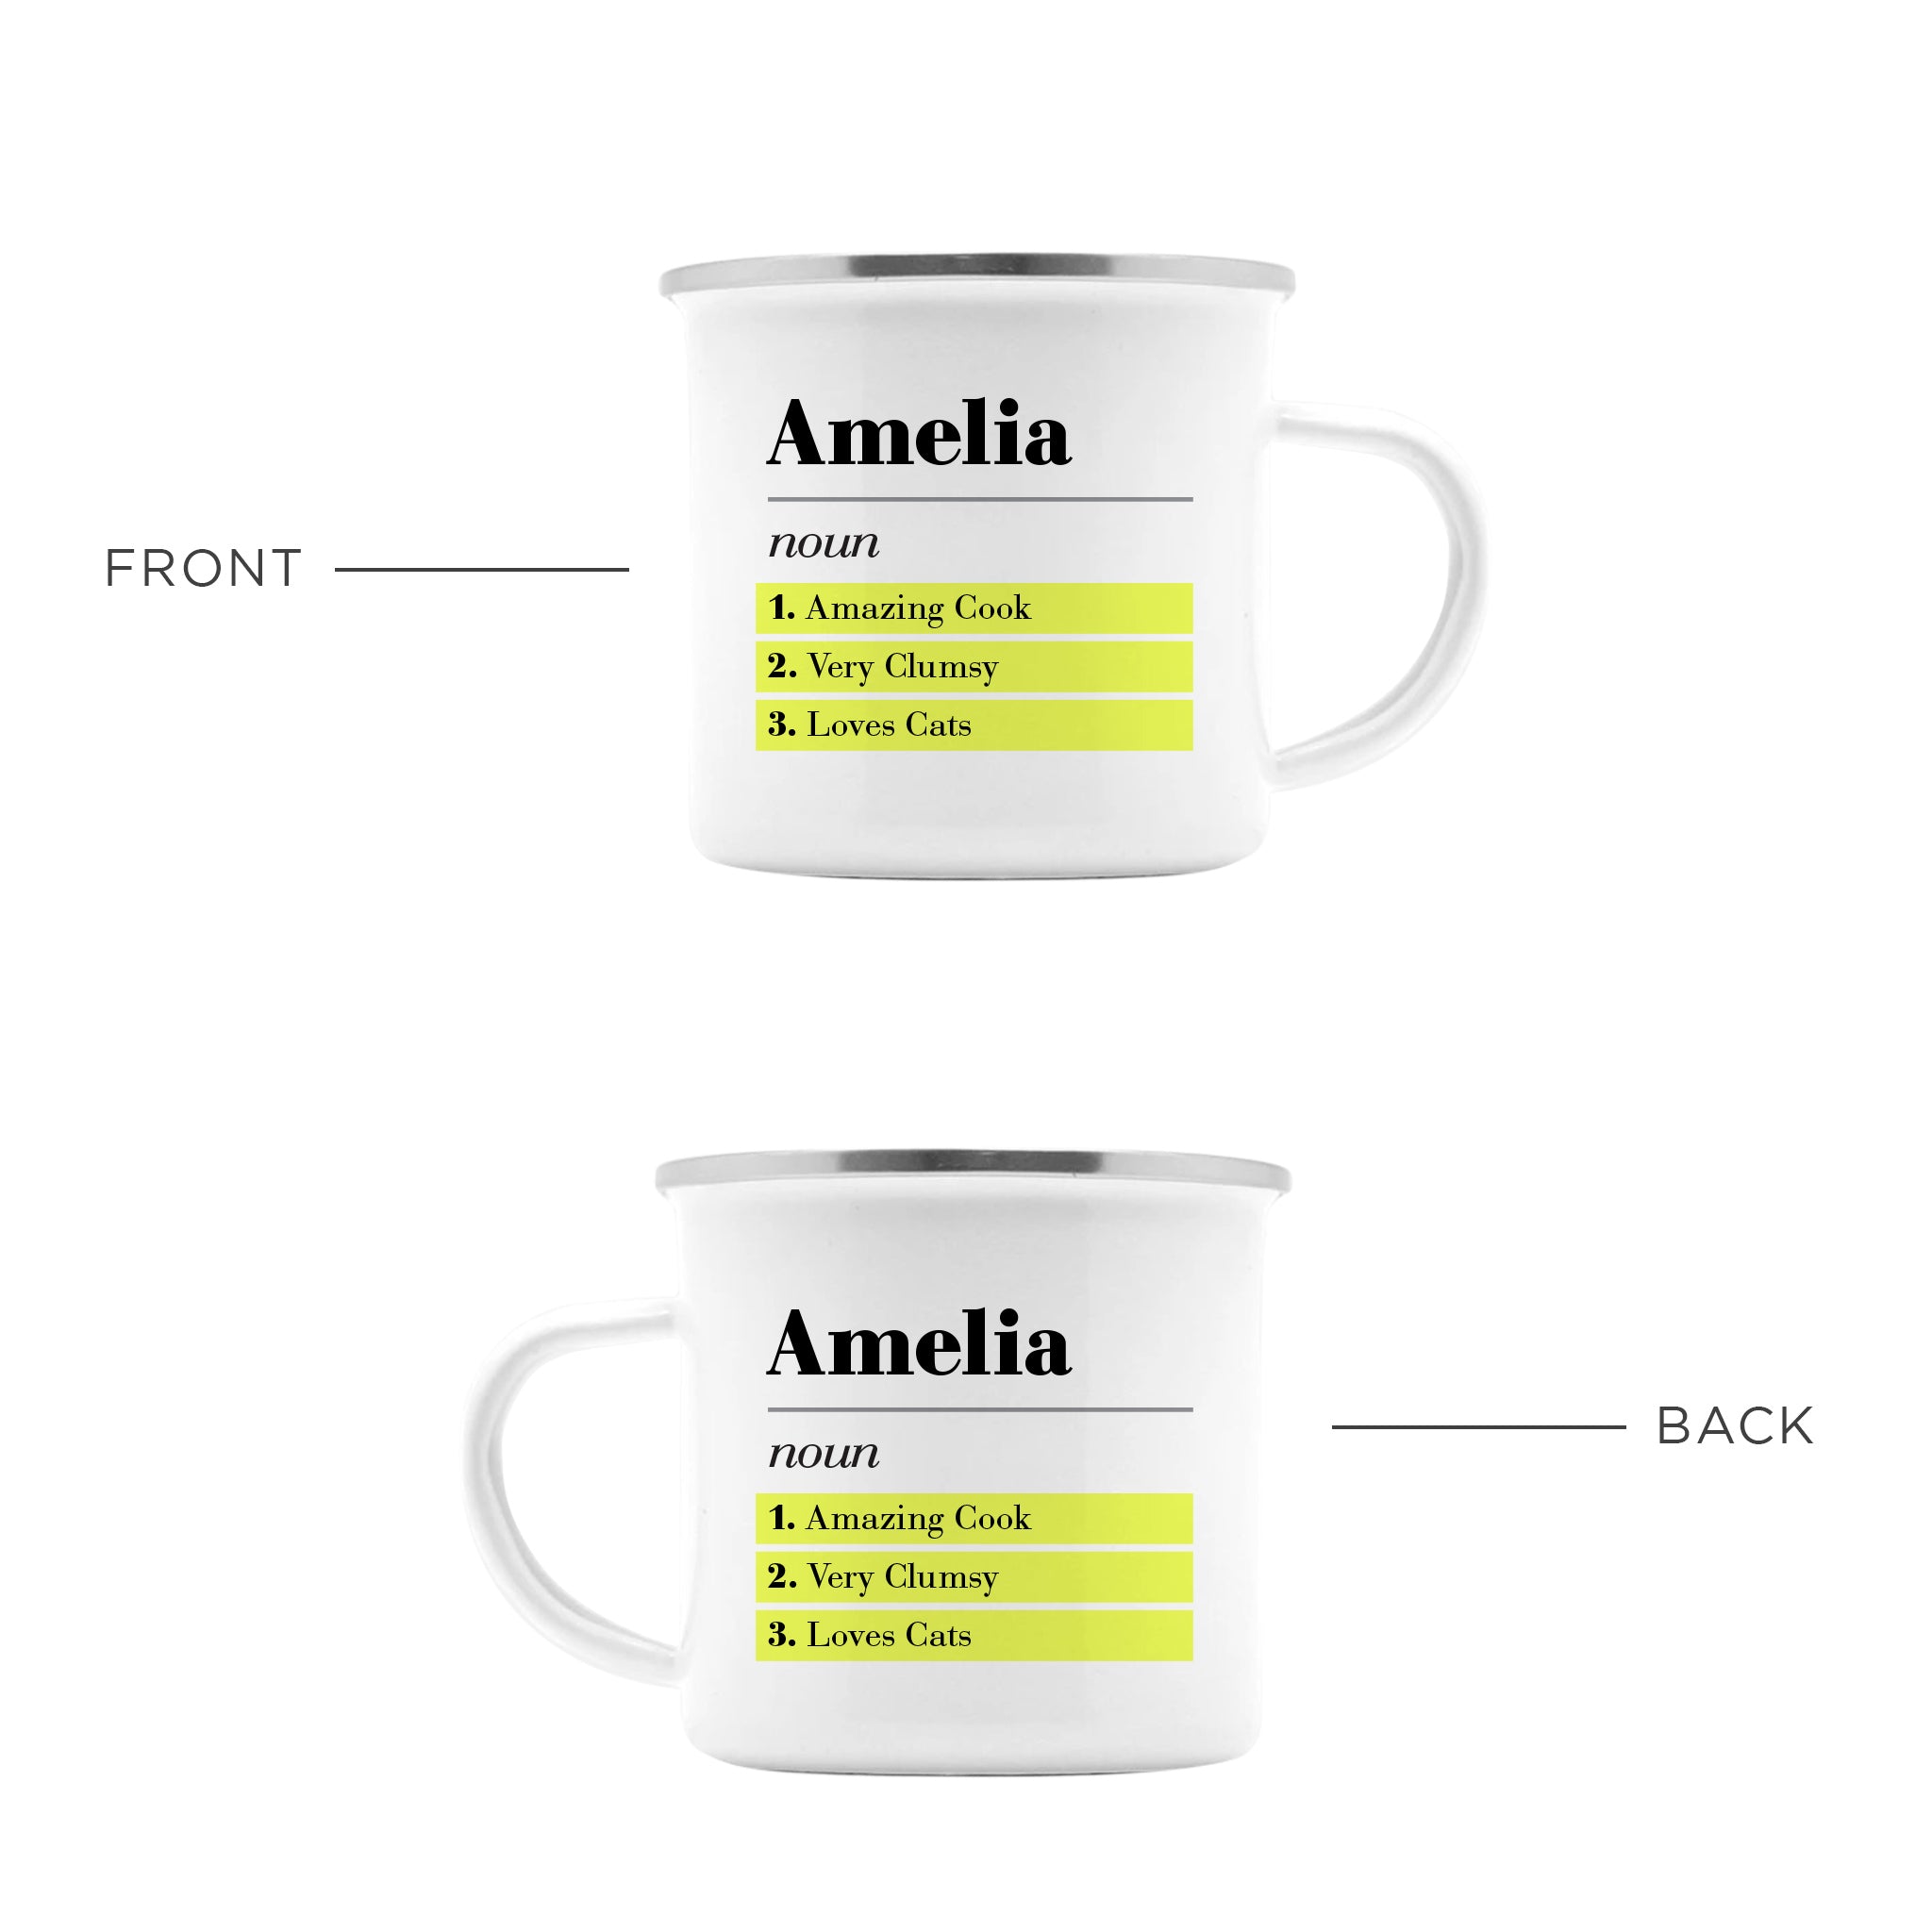 Personalized Name Definition Mug